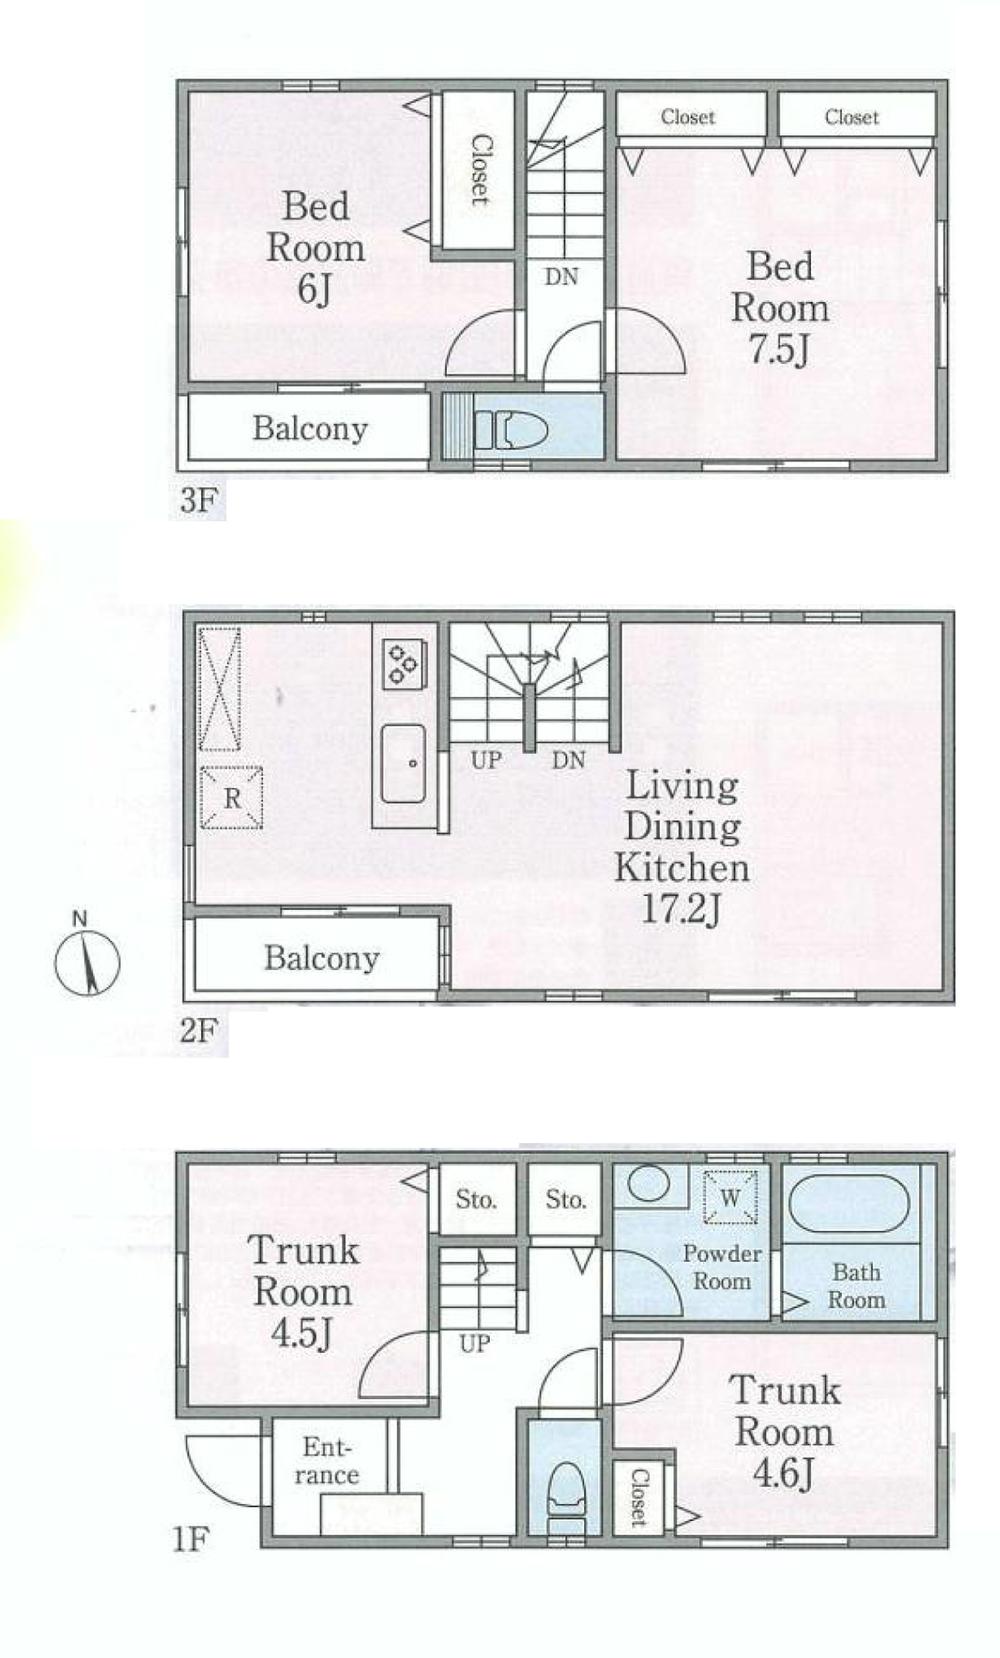 Floor plan. 31,800,000 yen, 2LDK + 2S (storeroom), Land area 60.02 sq m , Building area 96.62 sq m